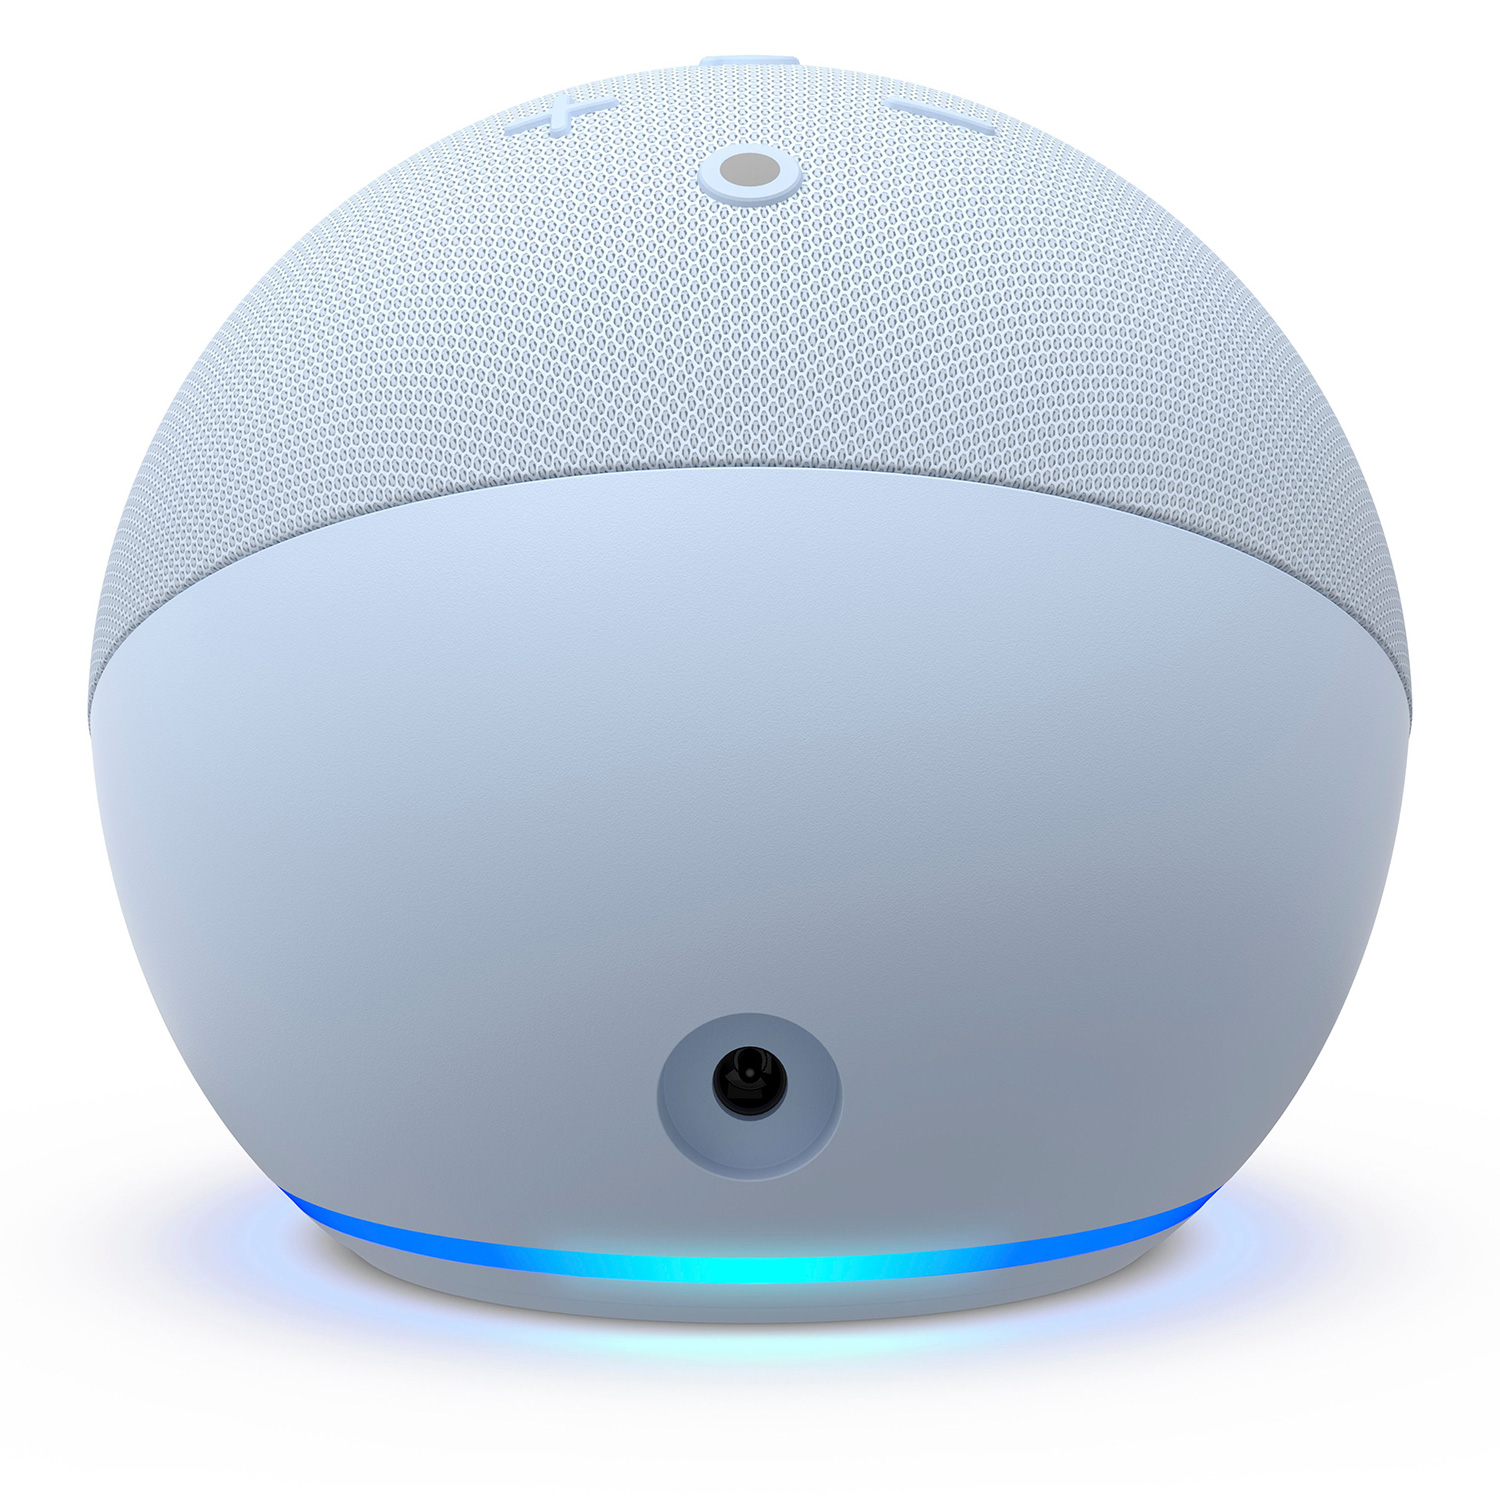 Amazon Echo Dot Alexa 5ª Geração With Clock - Azul